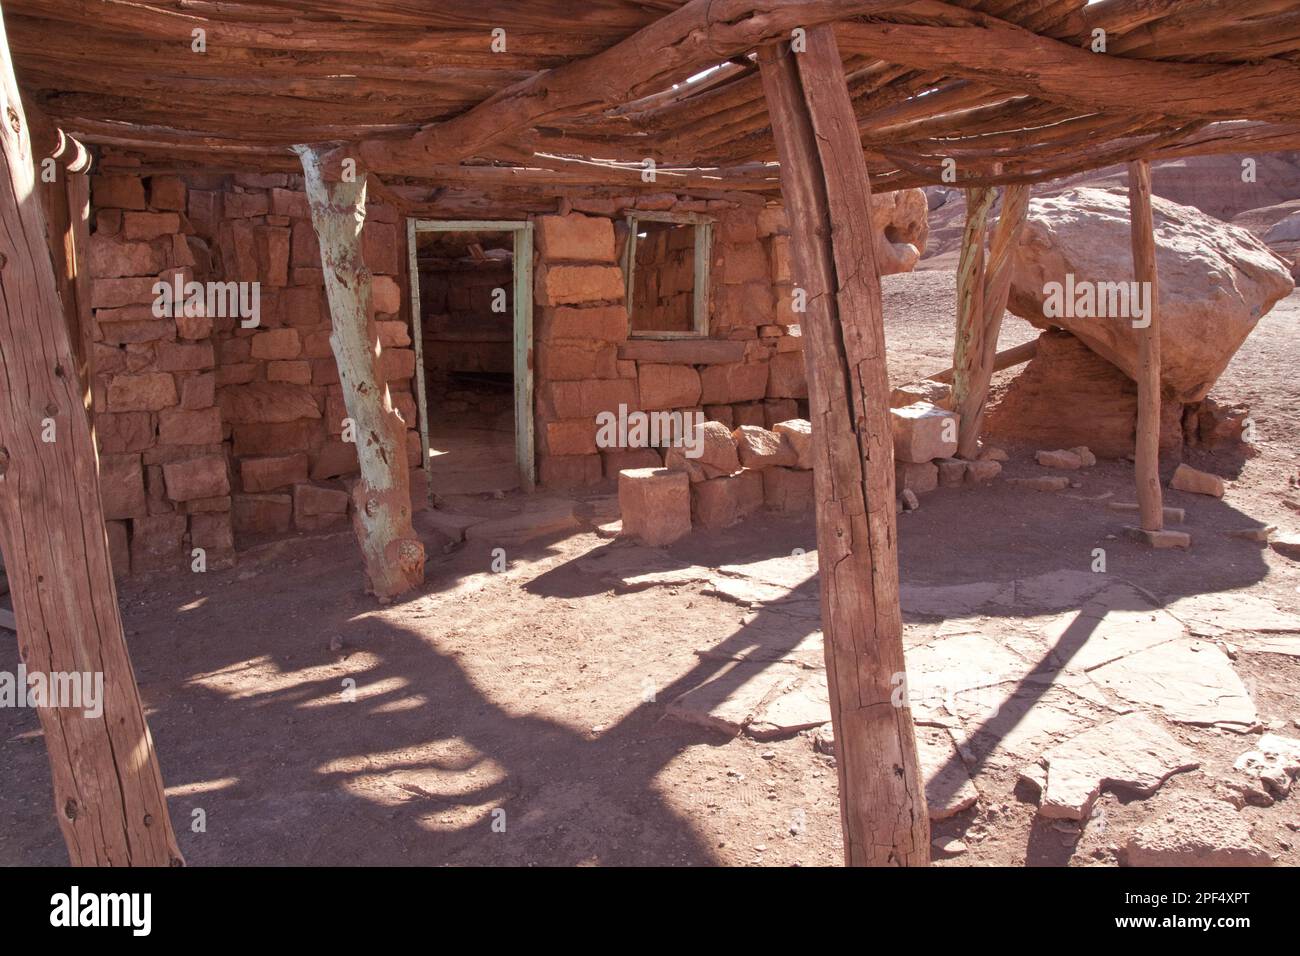 Dieses Rockhouse liegt nördlich der Navajo Bridge auf der US 89A. Nördlich von Flagstaff und Cameron, Arizona. Blanche Russells Auto hat hier in der Nähe eine Panne Stockfoto